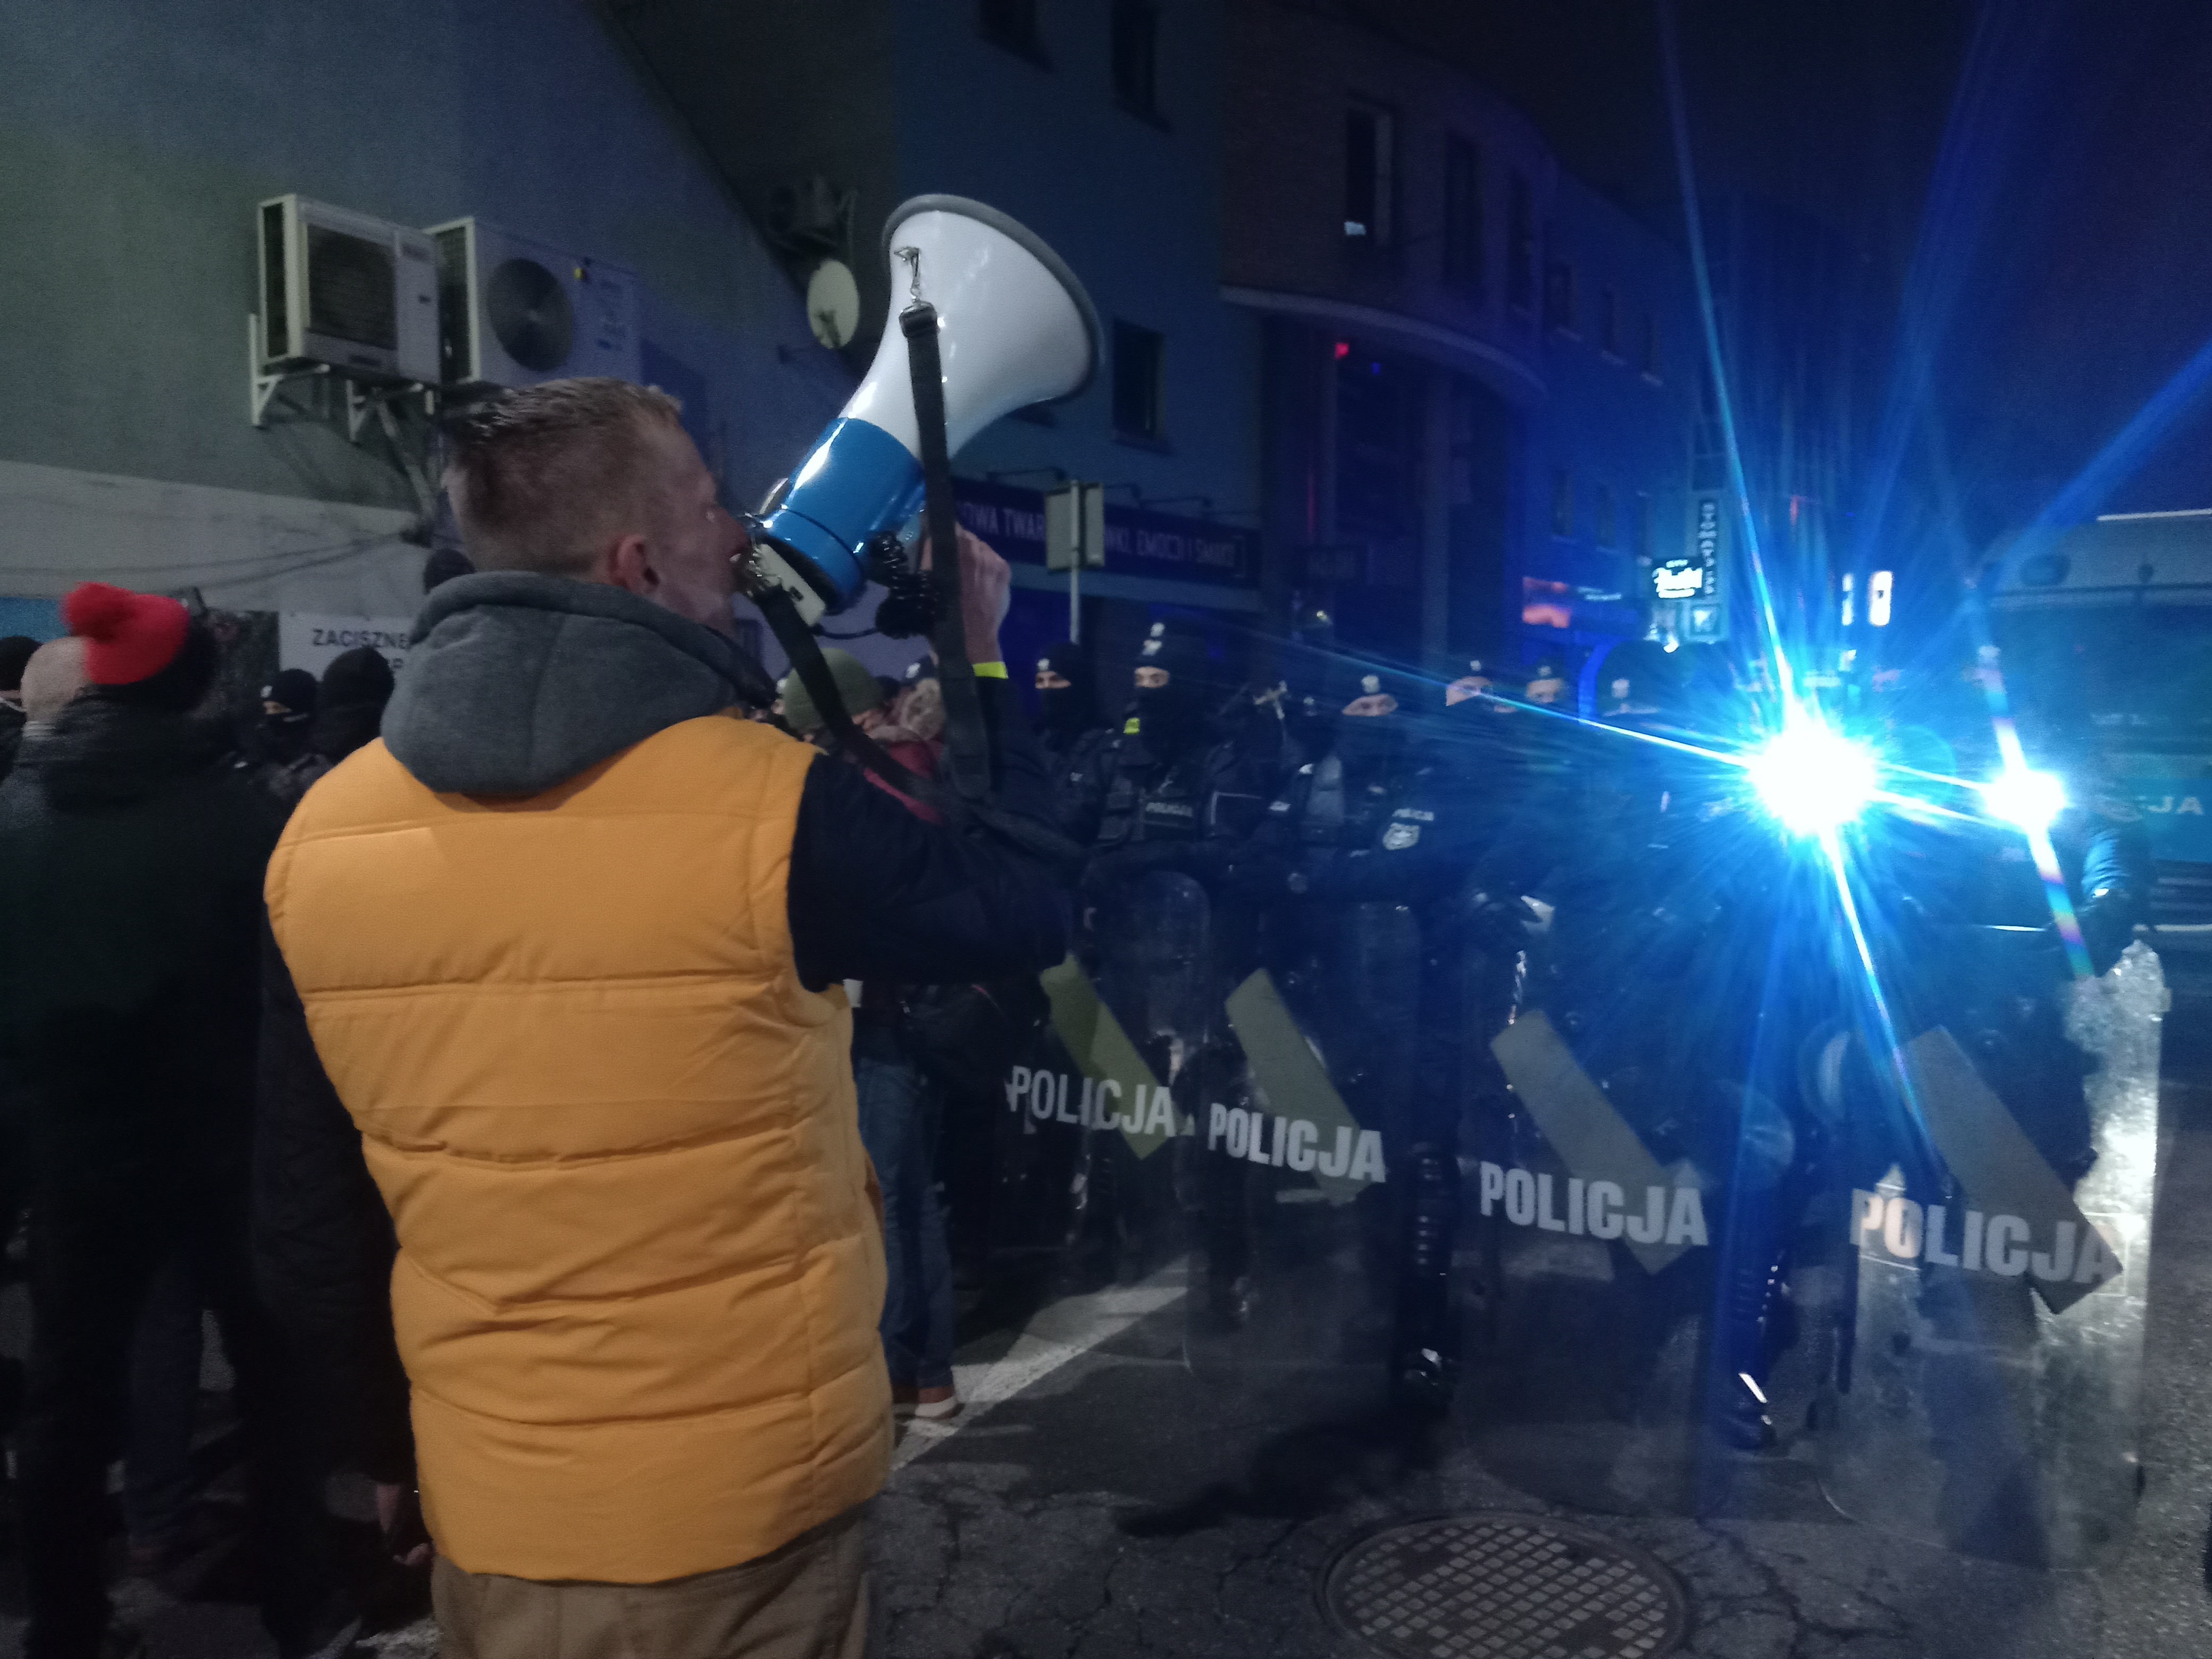 Krzysztof Kieś przez megafon apeluje o nieagresję, chwilę potem jest wciągnięty przez policję